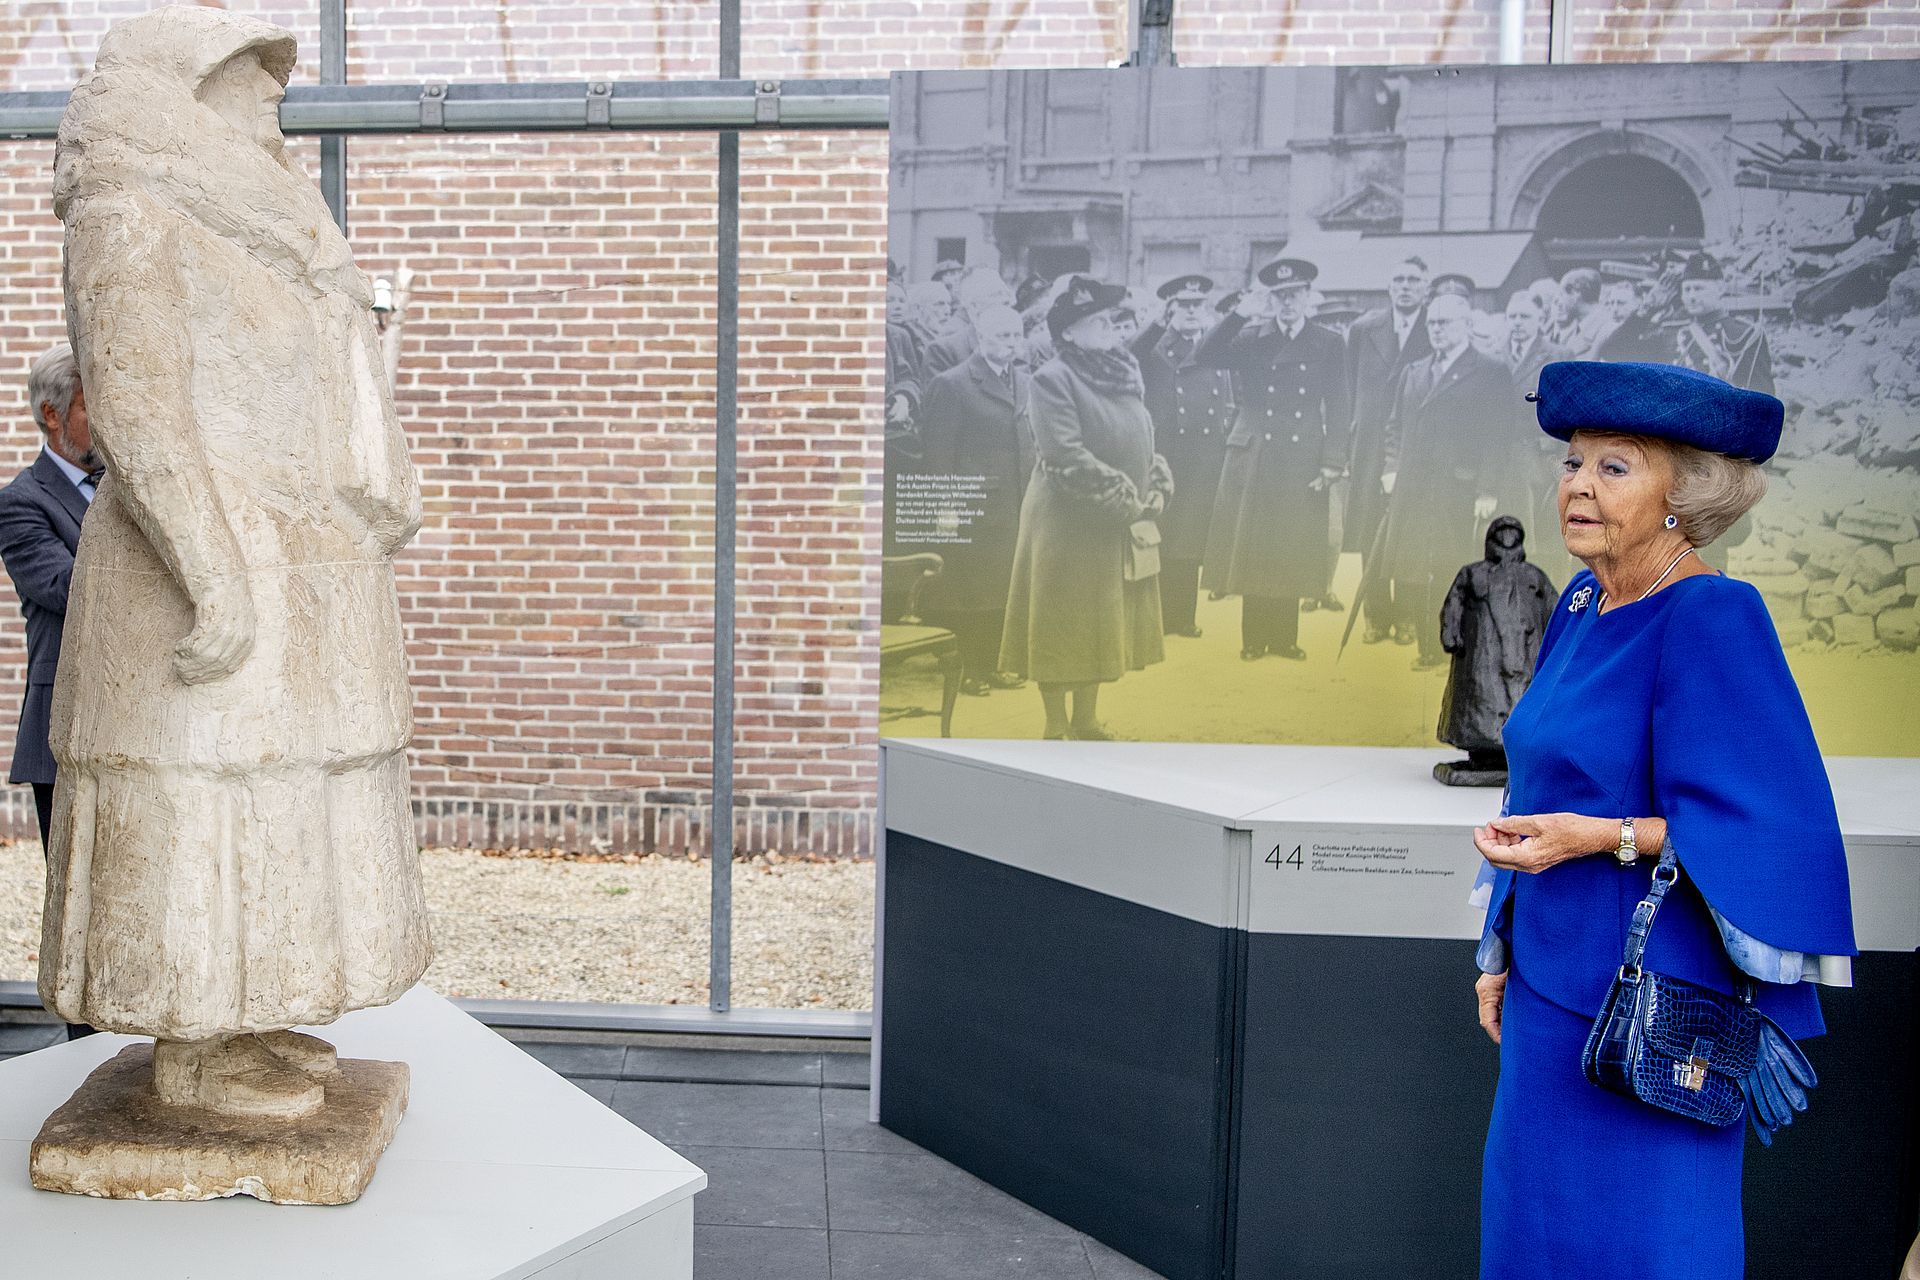 Prinses Beatrix heeft een passie voor beeldhouwen. In 2018 opende de prinses in Huis Doorn de